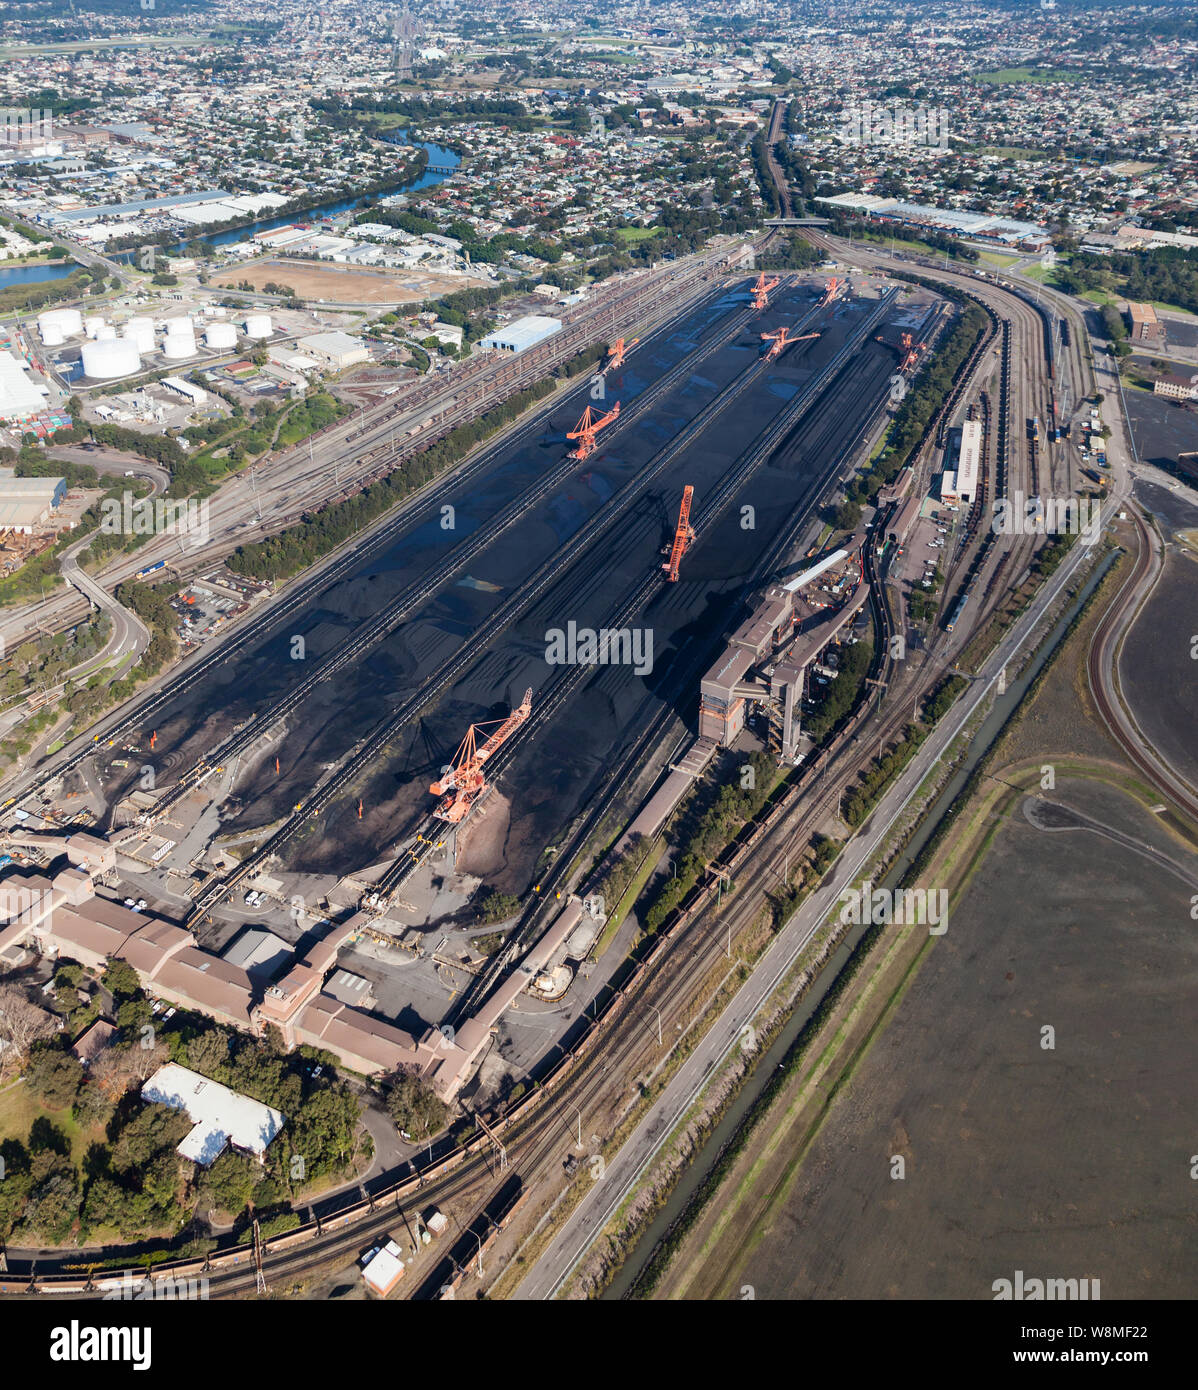 La Newcastle è una delle più grandi di esportazione porte di carbone nel mondo servite da apparecchiature di caricamento come questo in Carrington - Newcastle NSW Australia. Foto Stock